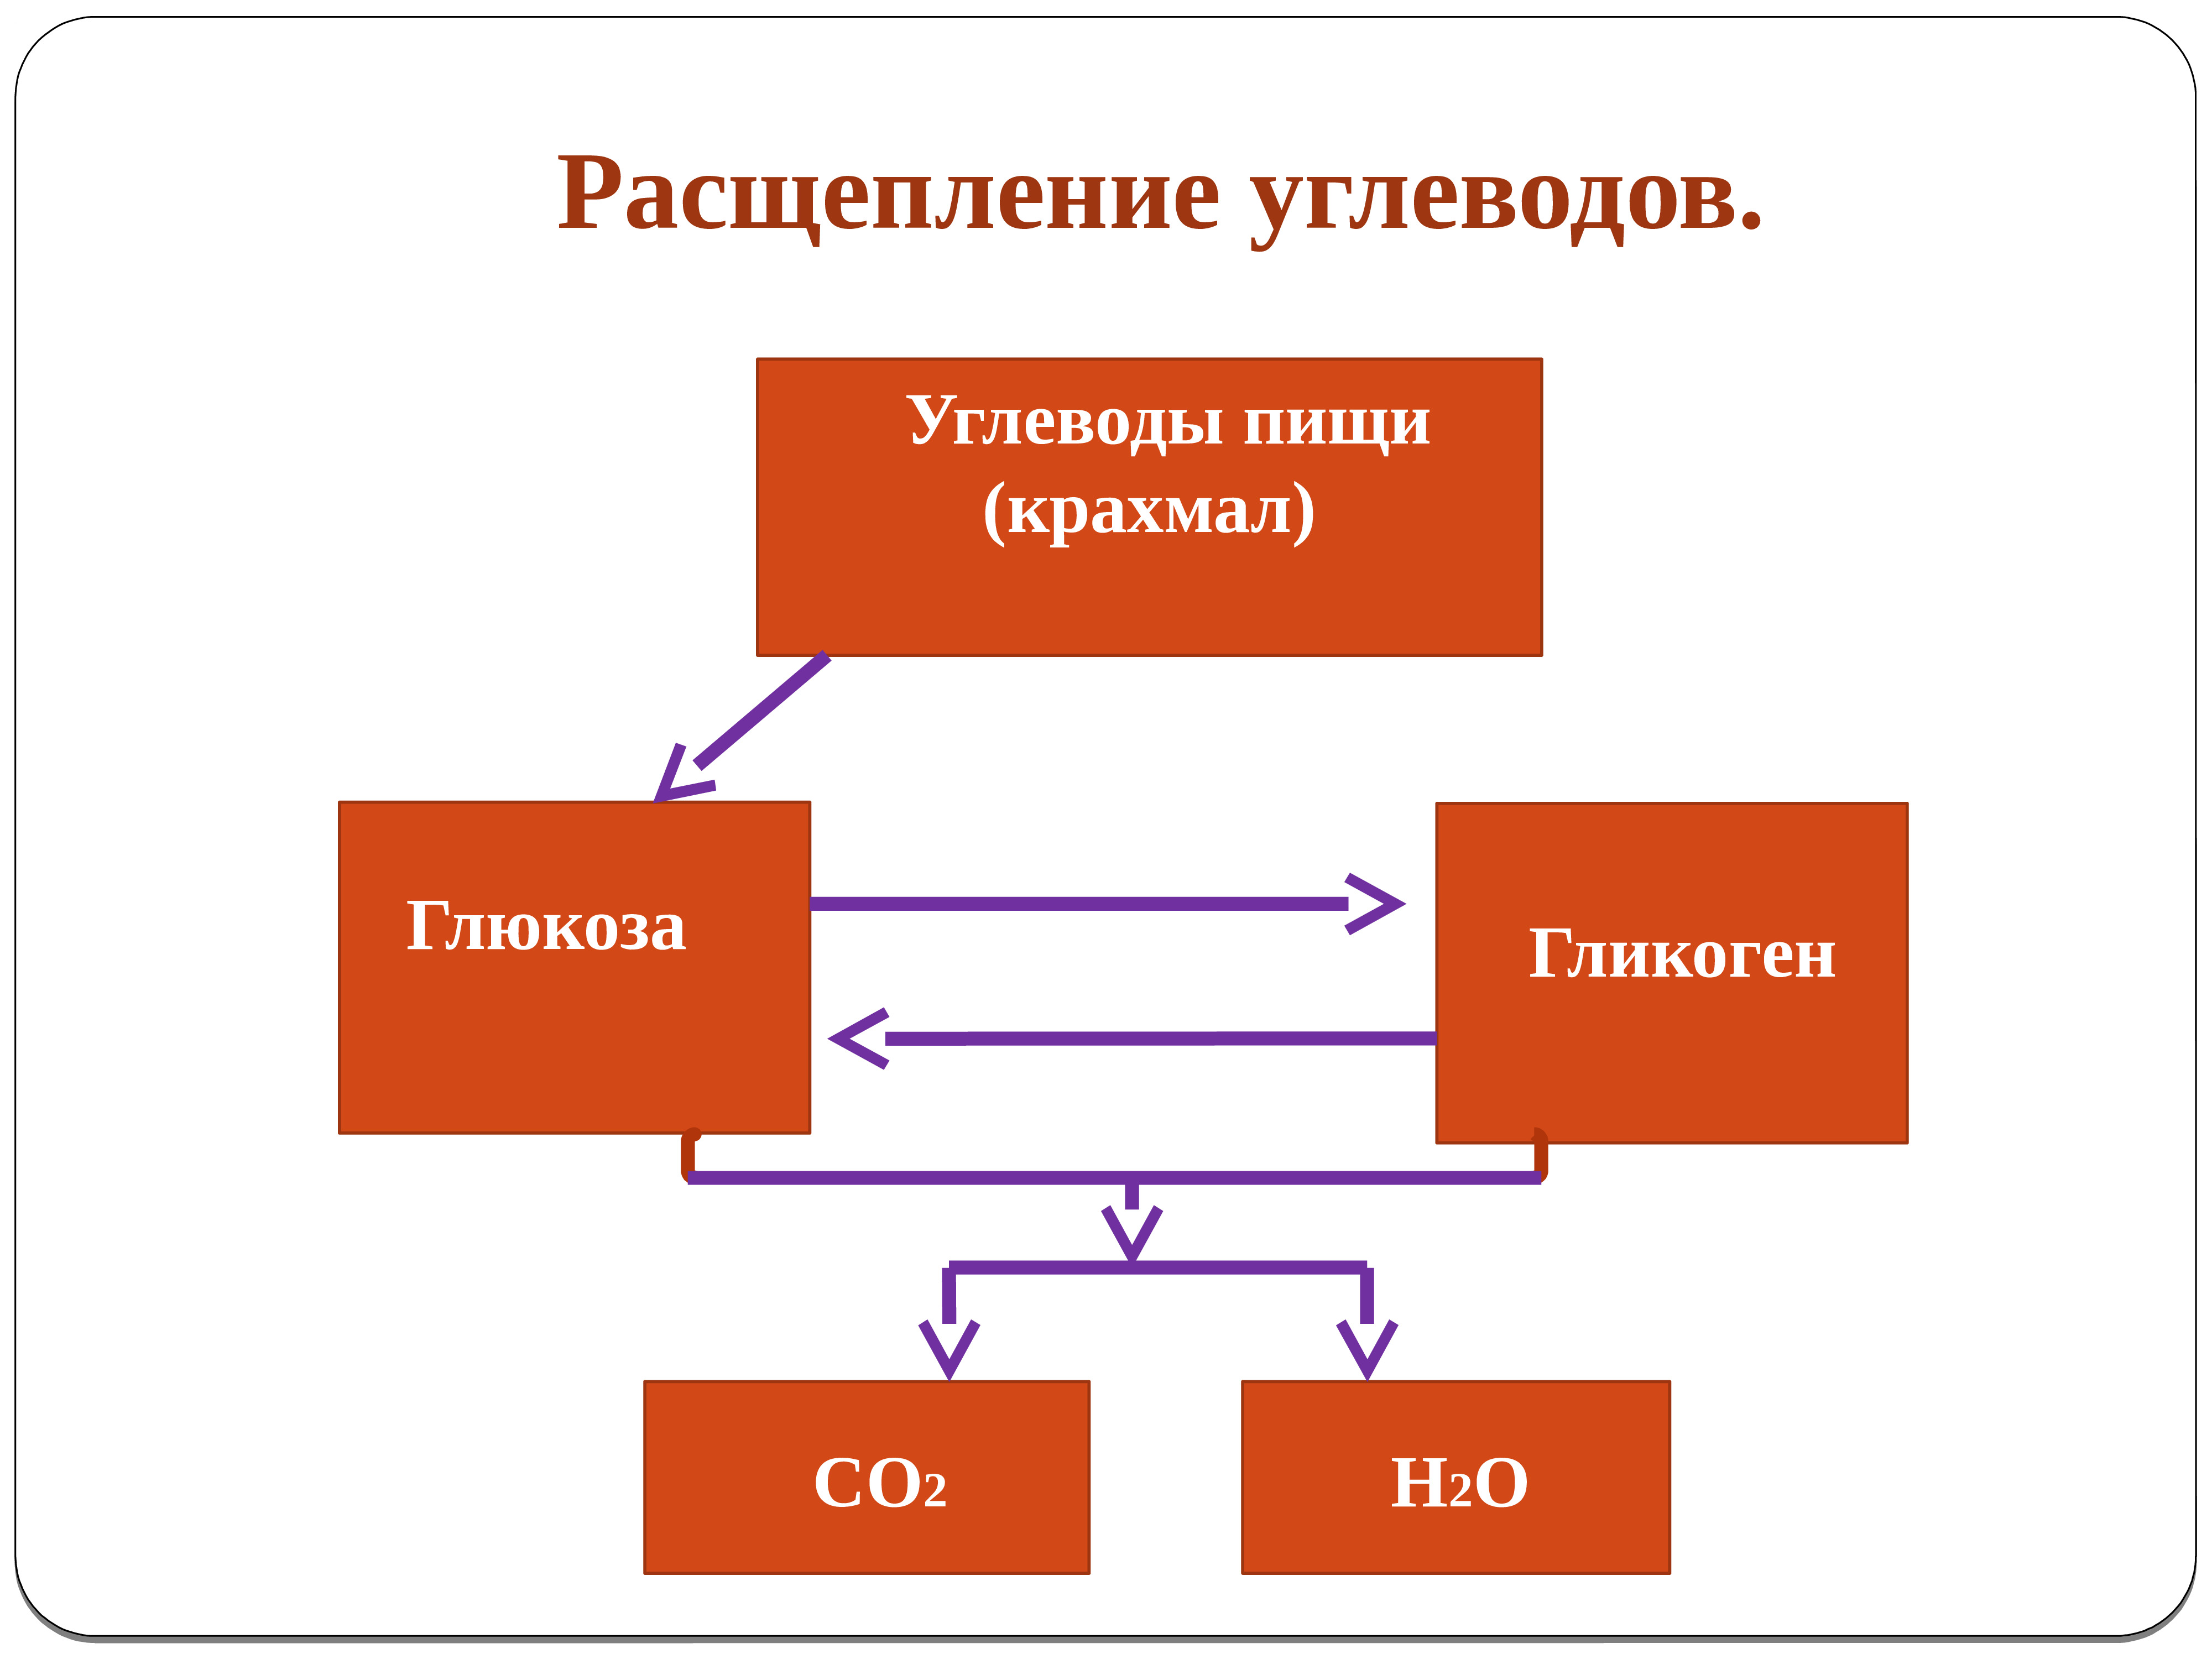 Продукты распада воды в организме. Схема расщепления углеводов в организме человека. Расщепление сложных углеводов. Сложные углеводы расщепляются на. Схема процесса расщепления углеводов.